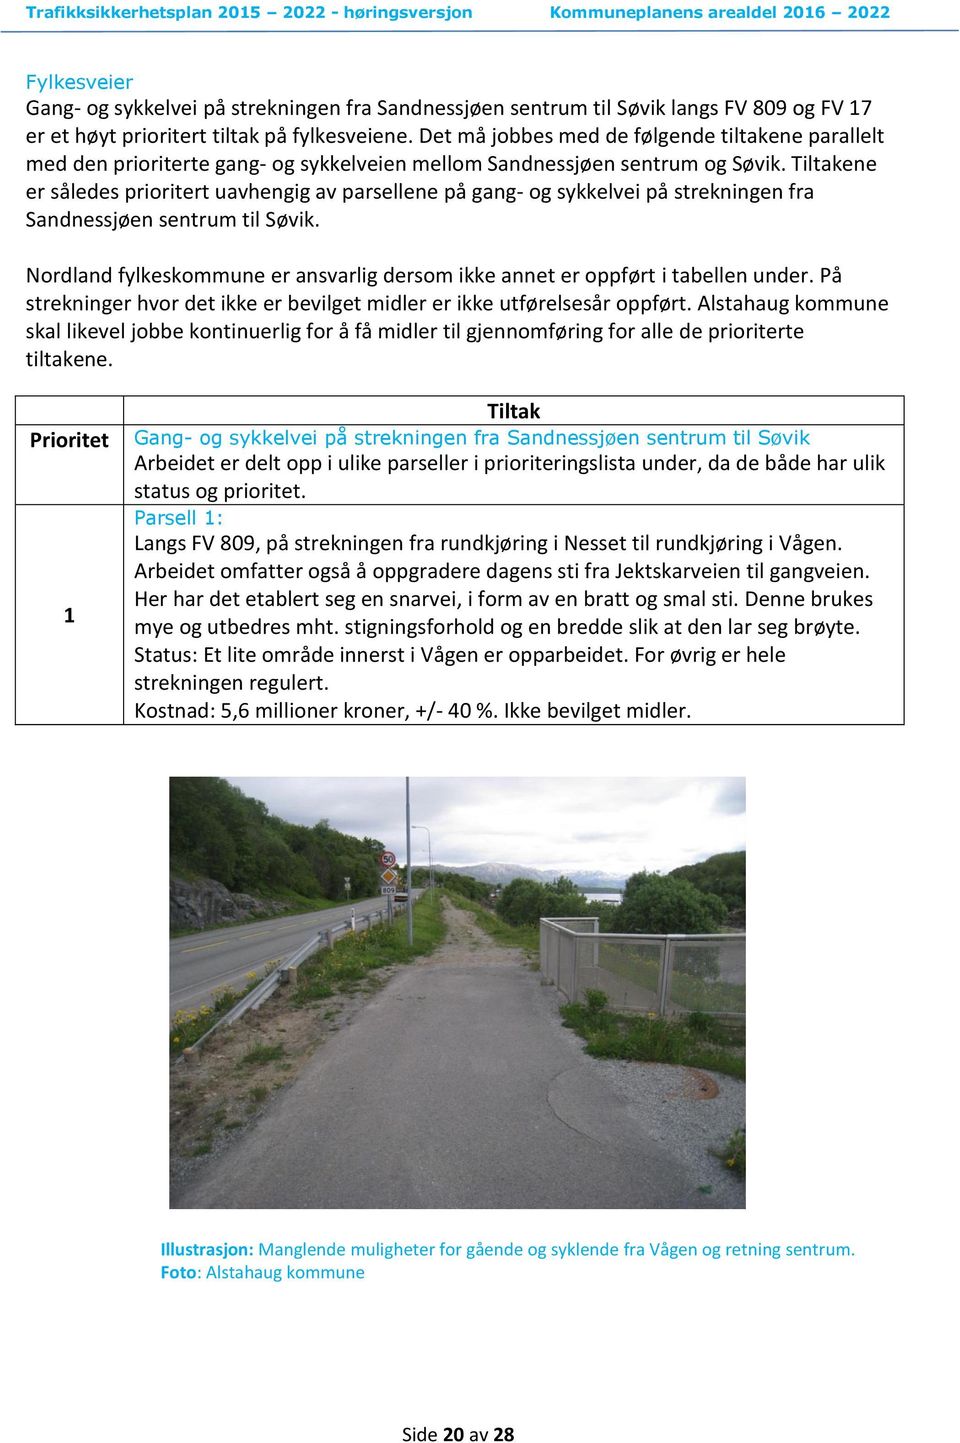 Tiltakene er således prioritert uavhengig av parsellene på gang- og sykkelvei på strekningen fra Sandnessjøen sentrum til Søvik.